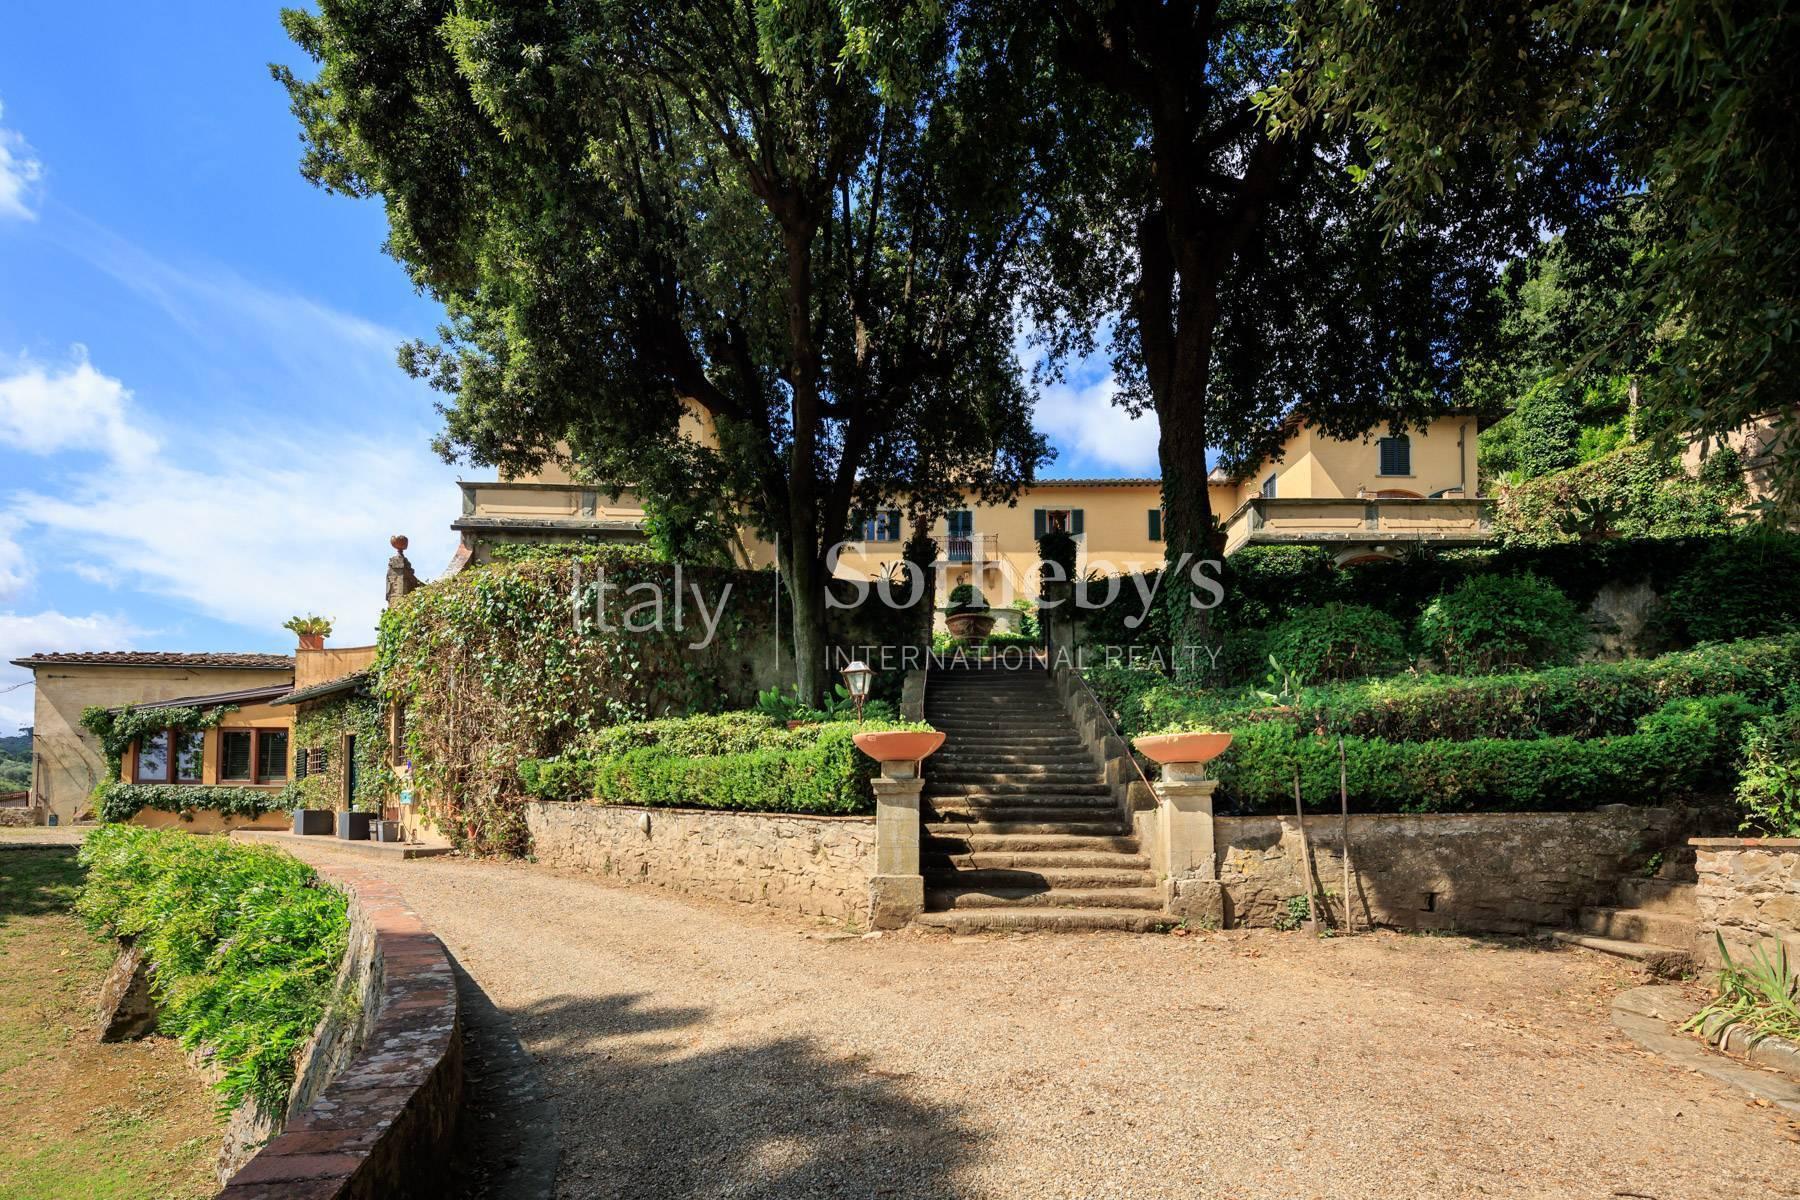 Prestigieux appartement dans villa historique près du Piazzale Michelangelo - 8